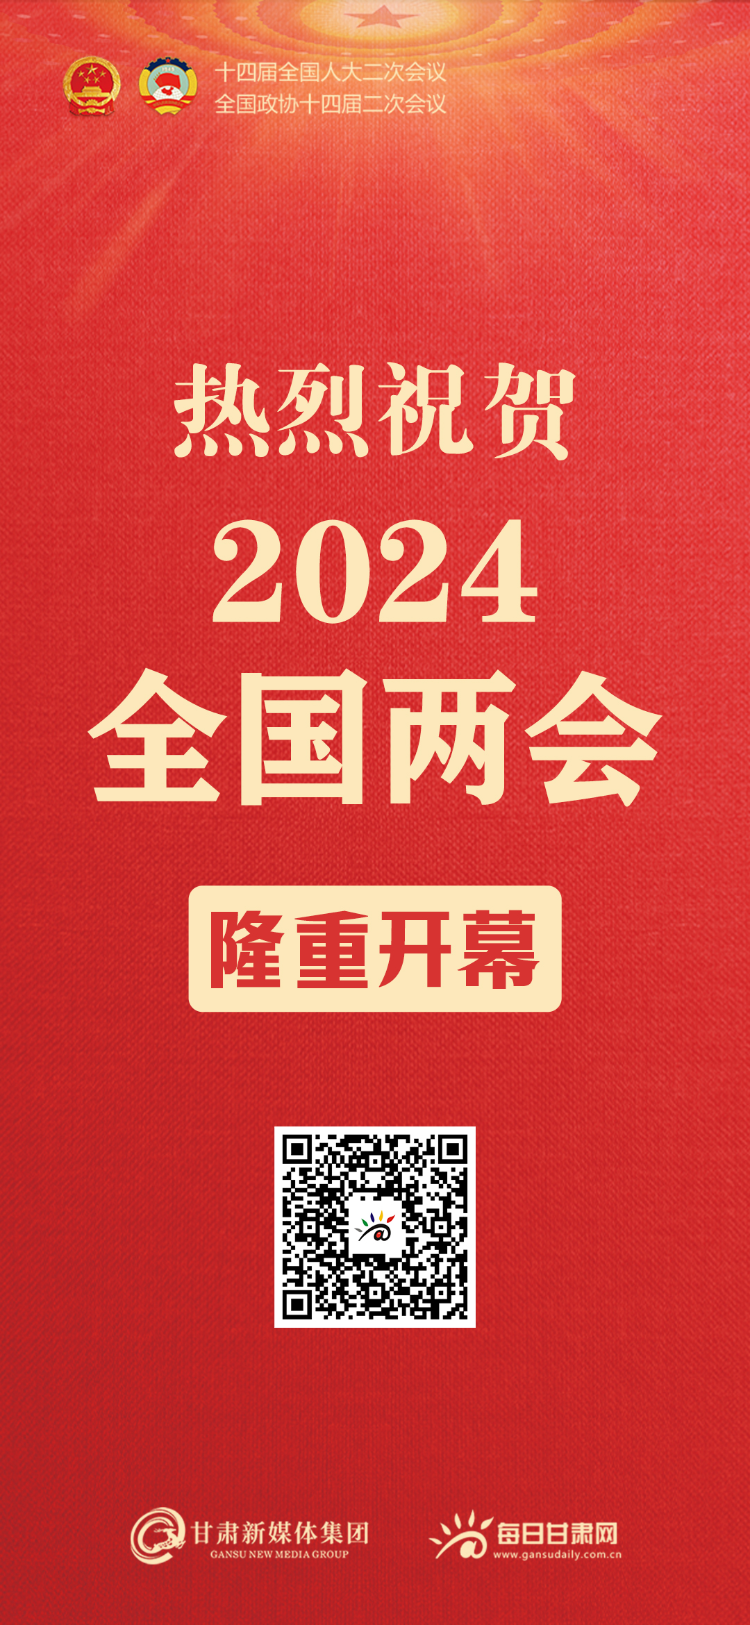 【微海报】热烈祝贺2024全国两会隆重开幕